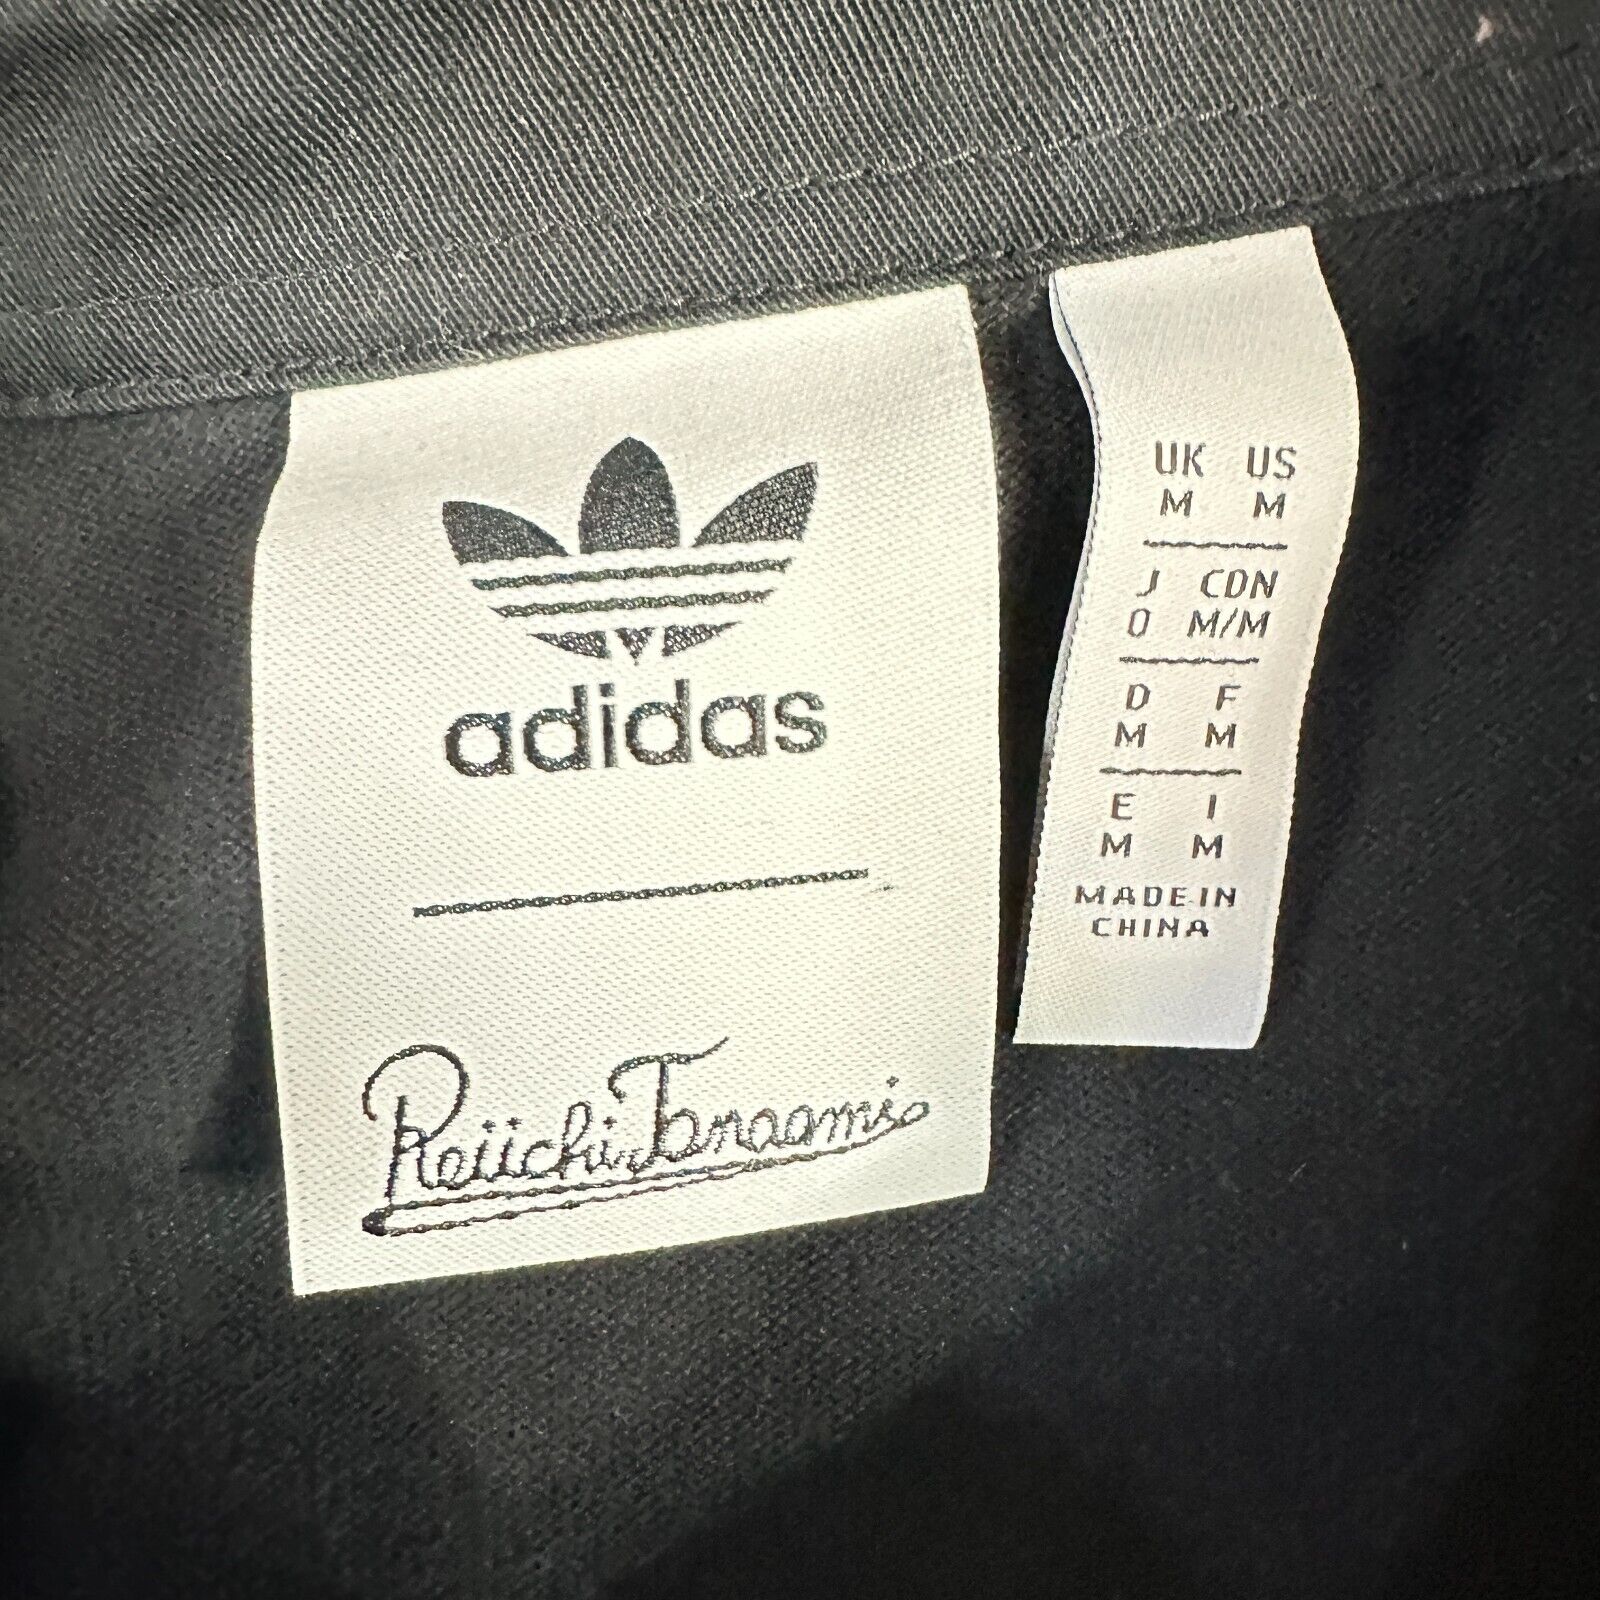 Adidas Reiichi Tanaami Polo Shirt M Black Long Sl… - image 4